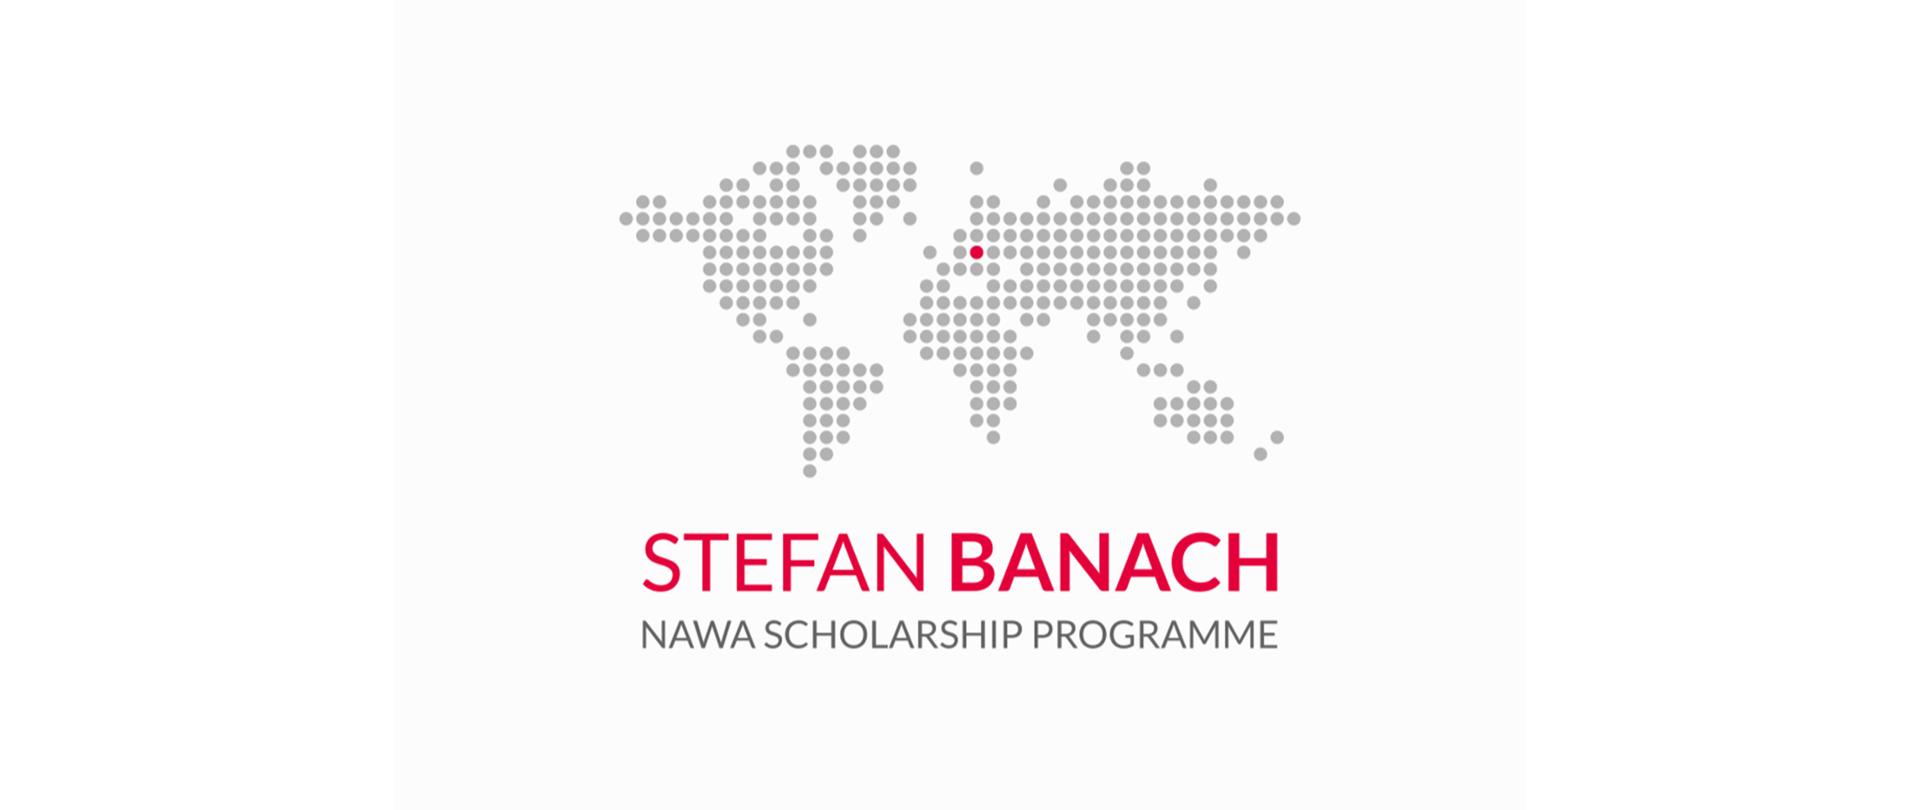 Białe tło, na którym szare kropki układają się w kształt kontynentów. Pod kształtem kontynentów napis: Stefan Banach Nawa Scholarship Programme.